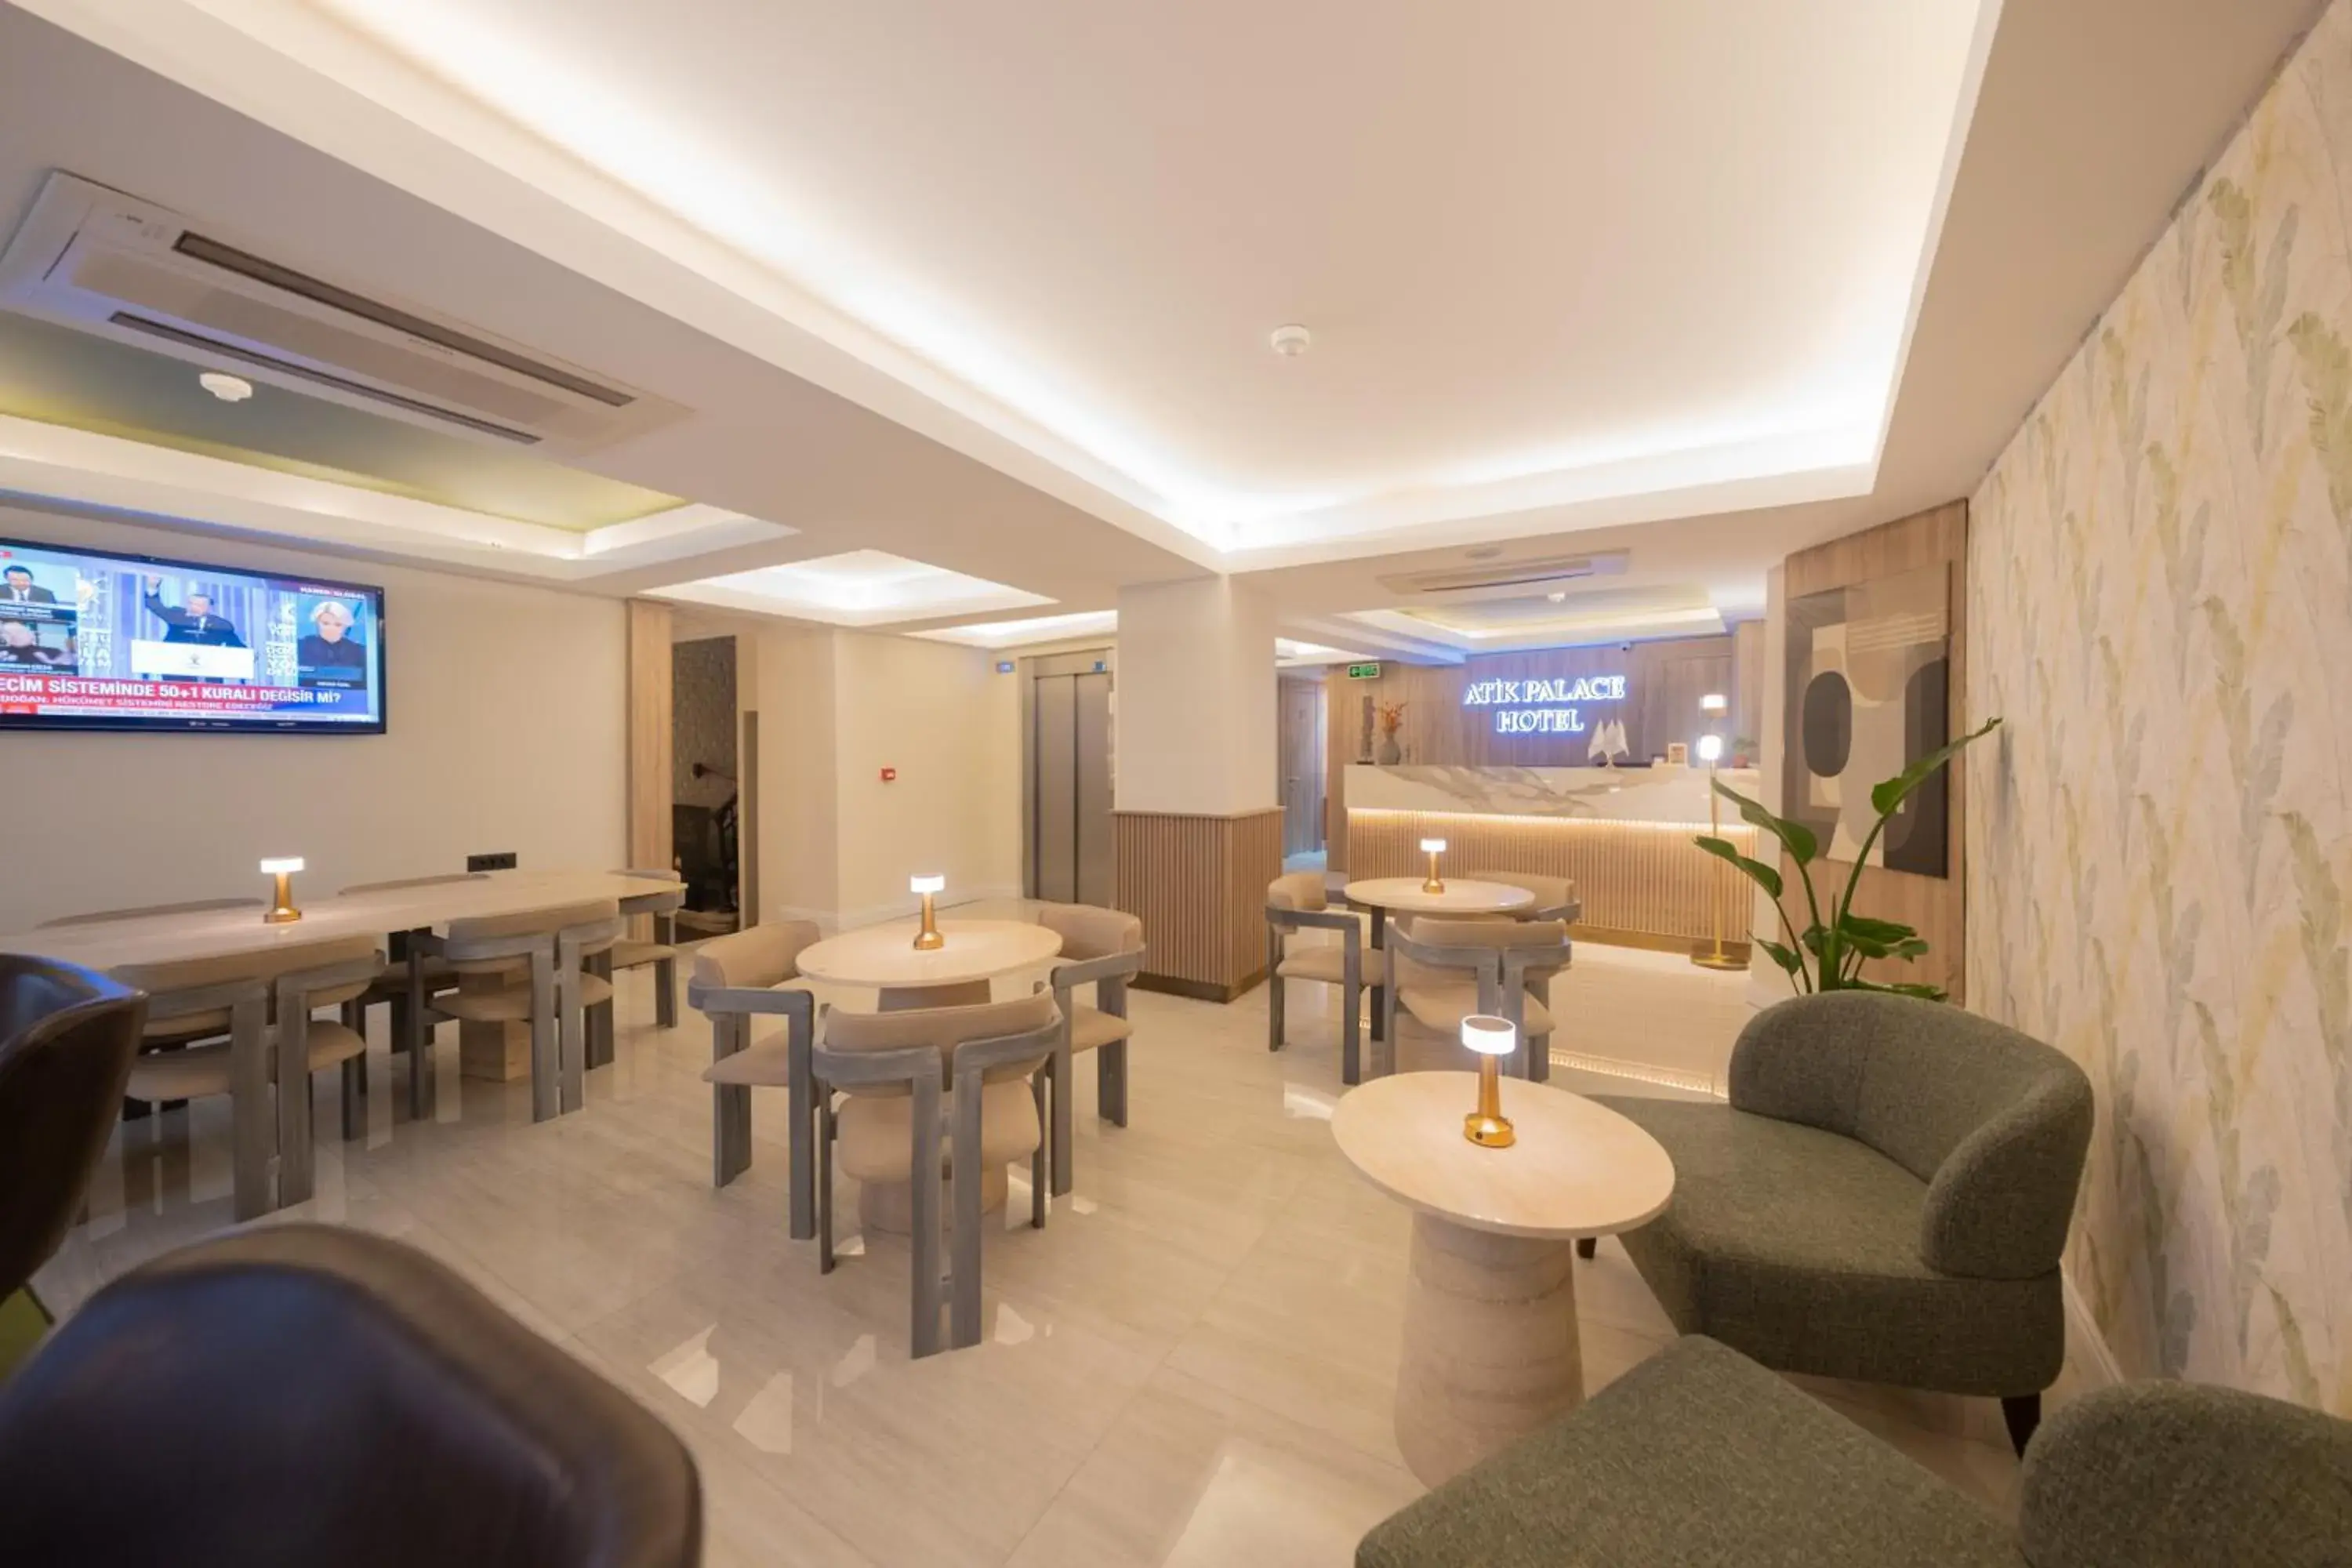 Seating area, Lounge/Bar in Atik Palas Hotel